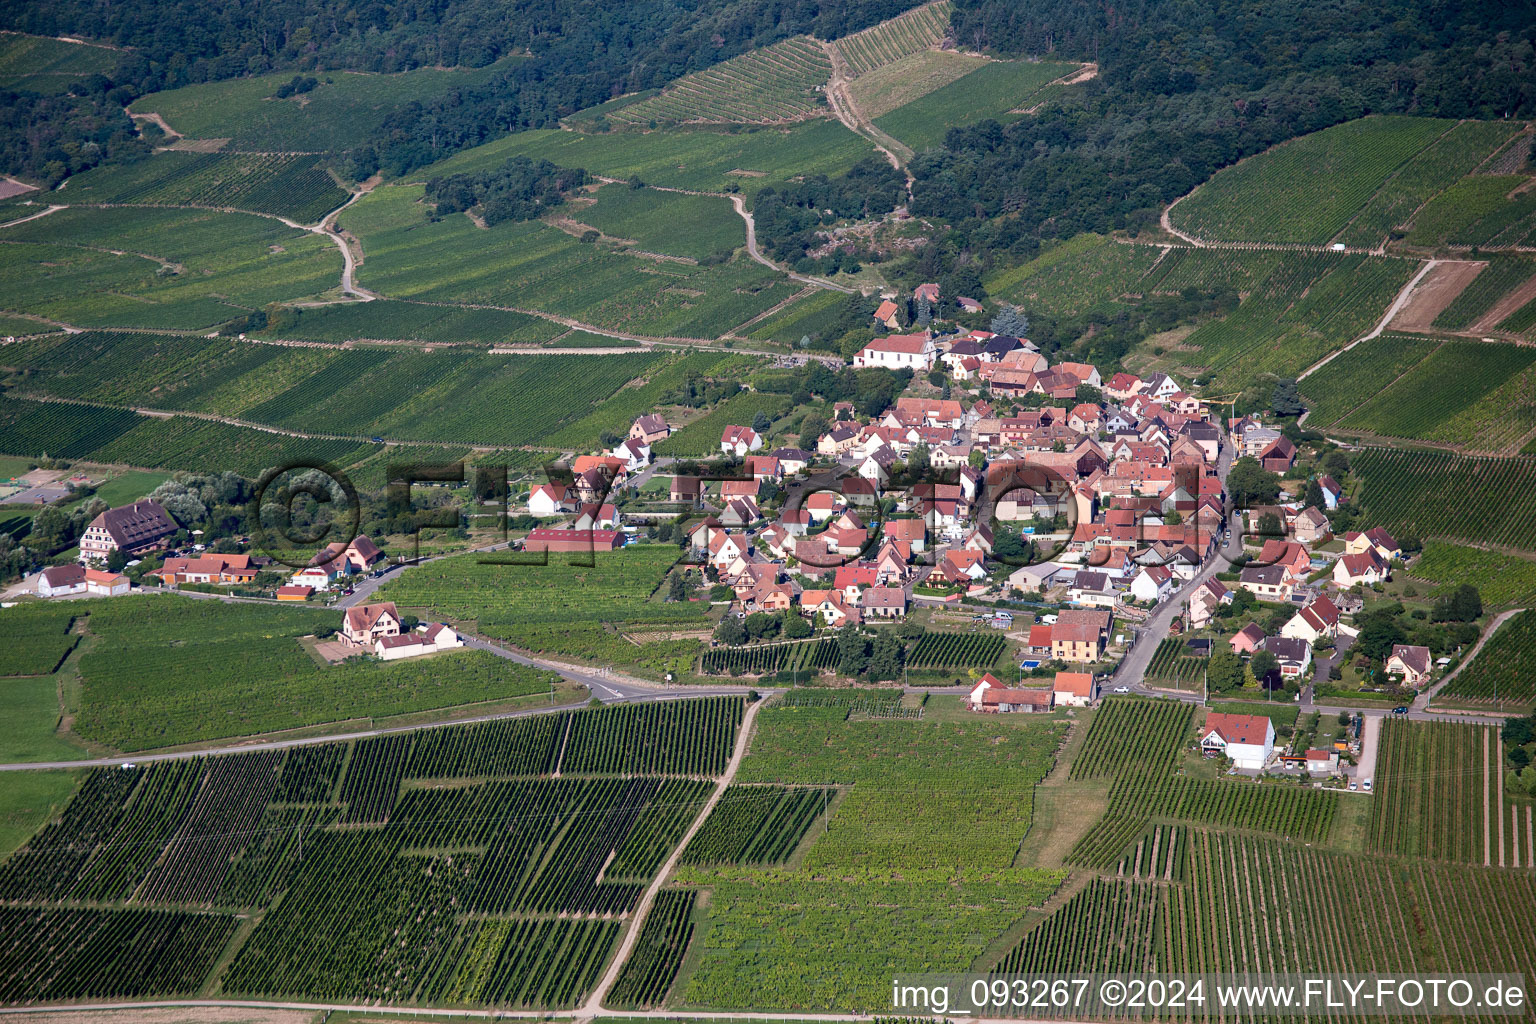 Luftbild von Dorf - Ansicht am Rande von landwirtschaftlichen Feldern und Nutzflächen in Dieffenthal in Grand Est im Bundesland Bas-Rhin, Frankreich